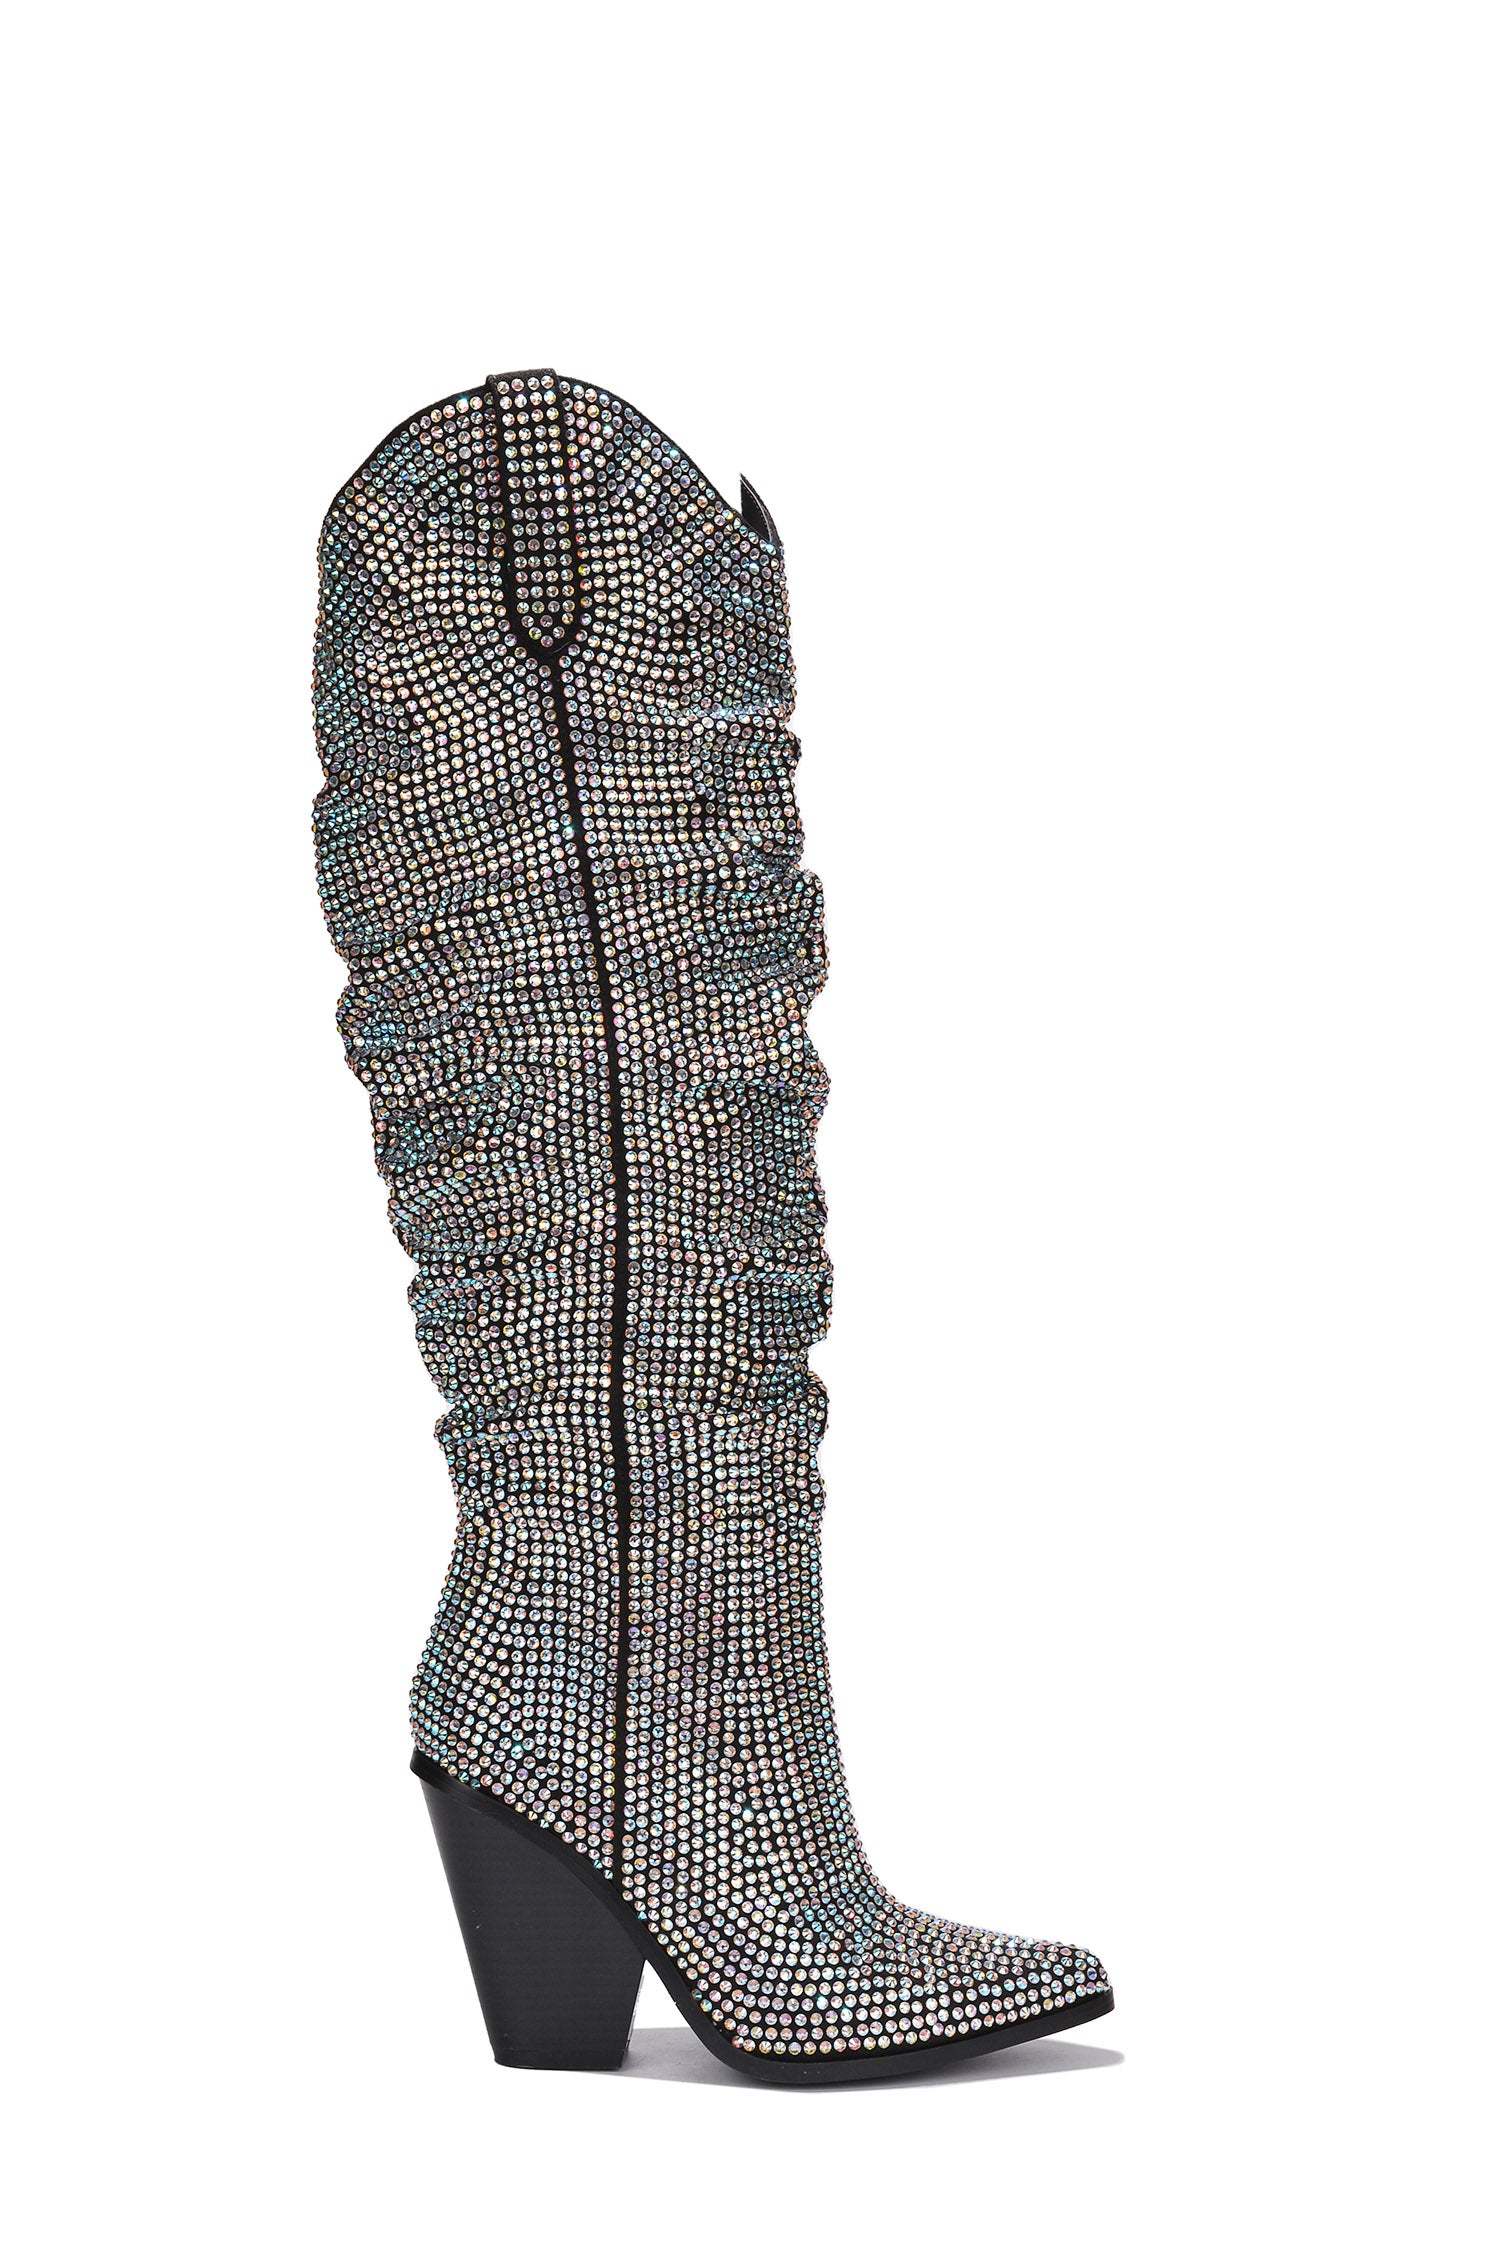 Diamante Pointed Toe Black Rhinestone Boots – Cape Robbin